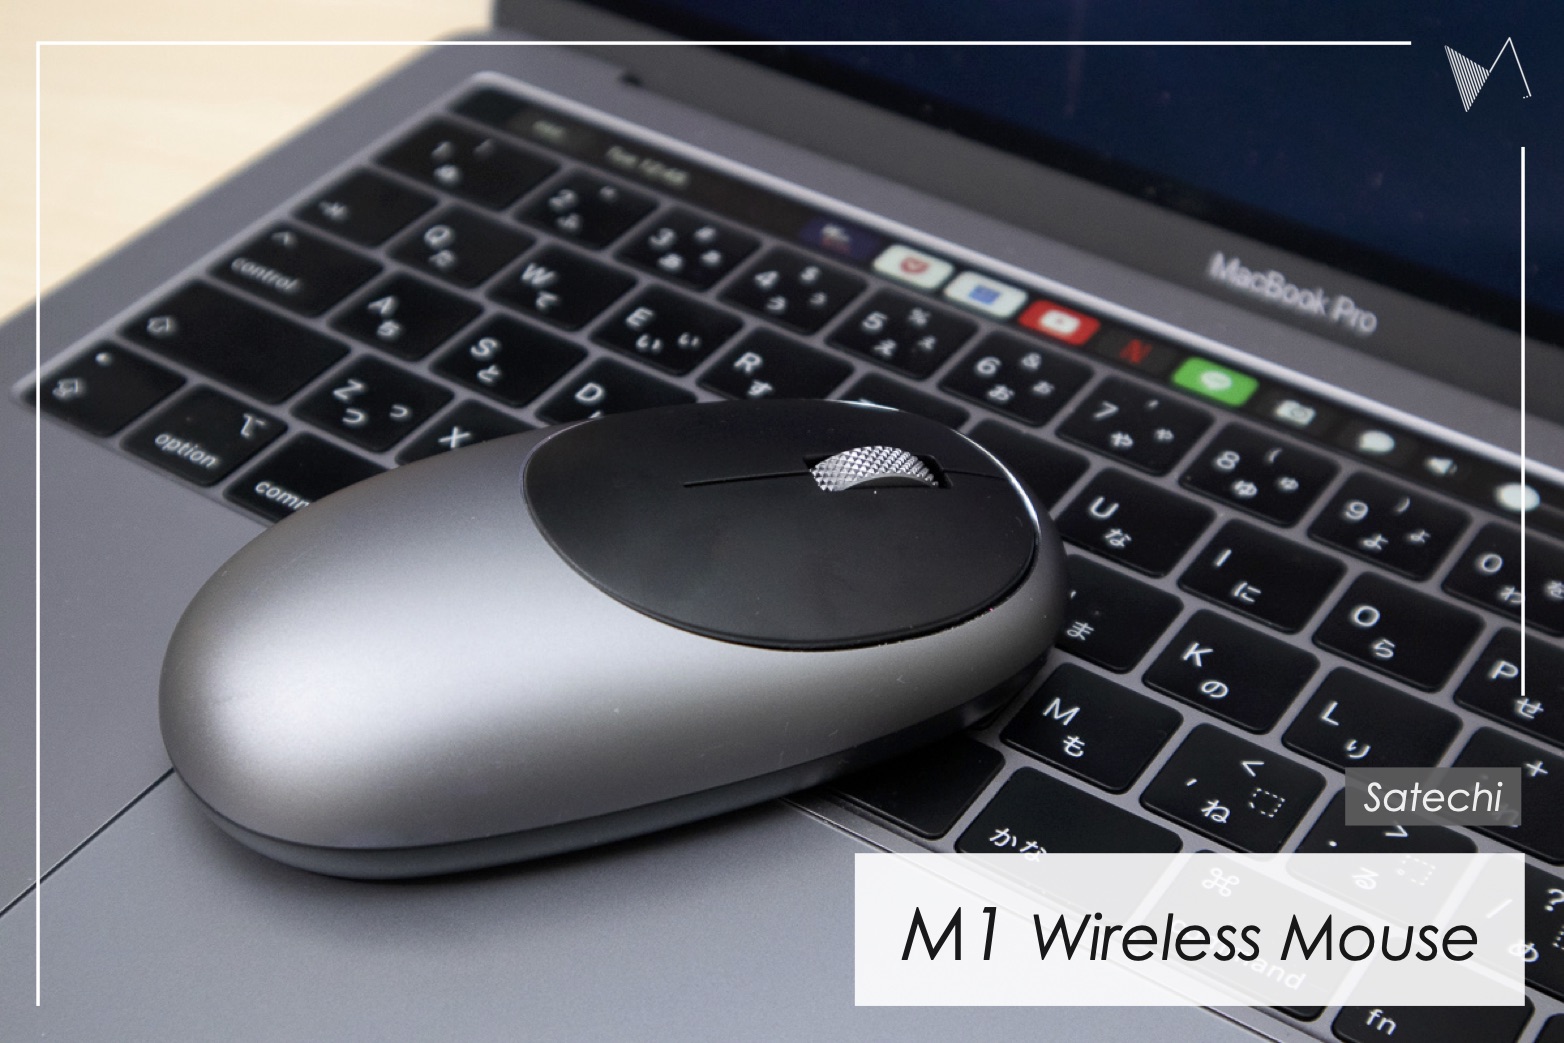 サテチ M1 Wireless Mouse 購入レビュー Usb Type C対応 Macと相性バツグンのコンパクトマウス Satechi Kissanadu